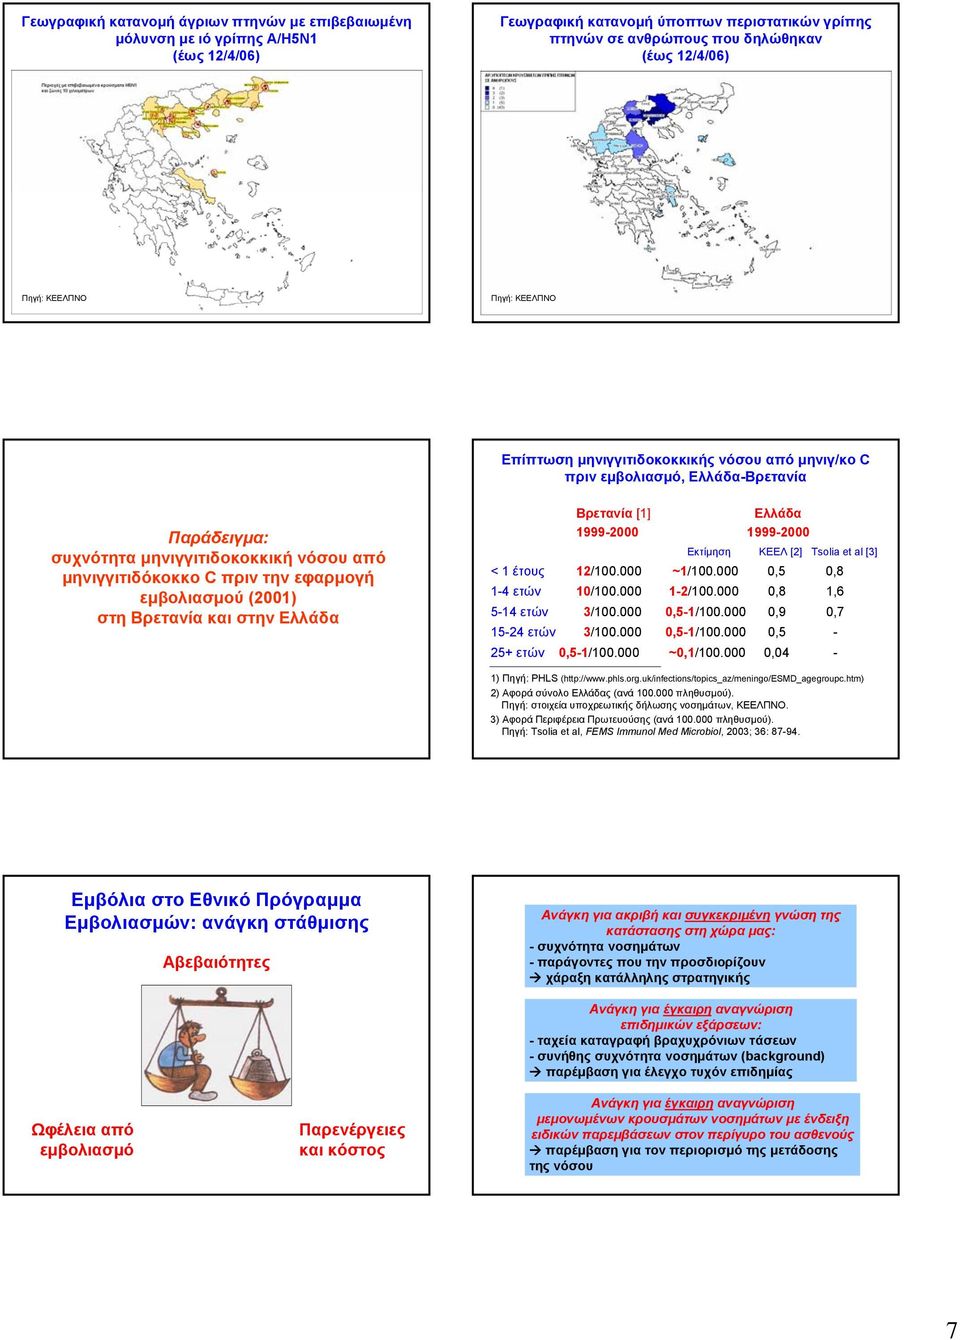 μηνιγγιτιδόκοκκο C πριν την εφαρμογή εμβολιασμού (2001) στη Βρετανία και στην Ελλάδα Βρετανία [1] Ελλάδα 1999-2000 1999-2000 Εκτίμηση ΚΕΕΛ [2] Tsolia et al [3] < 1 έτους 12/100.000 ~1/100.